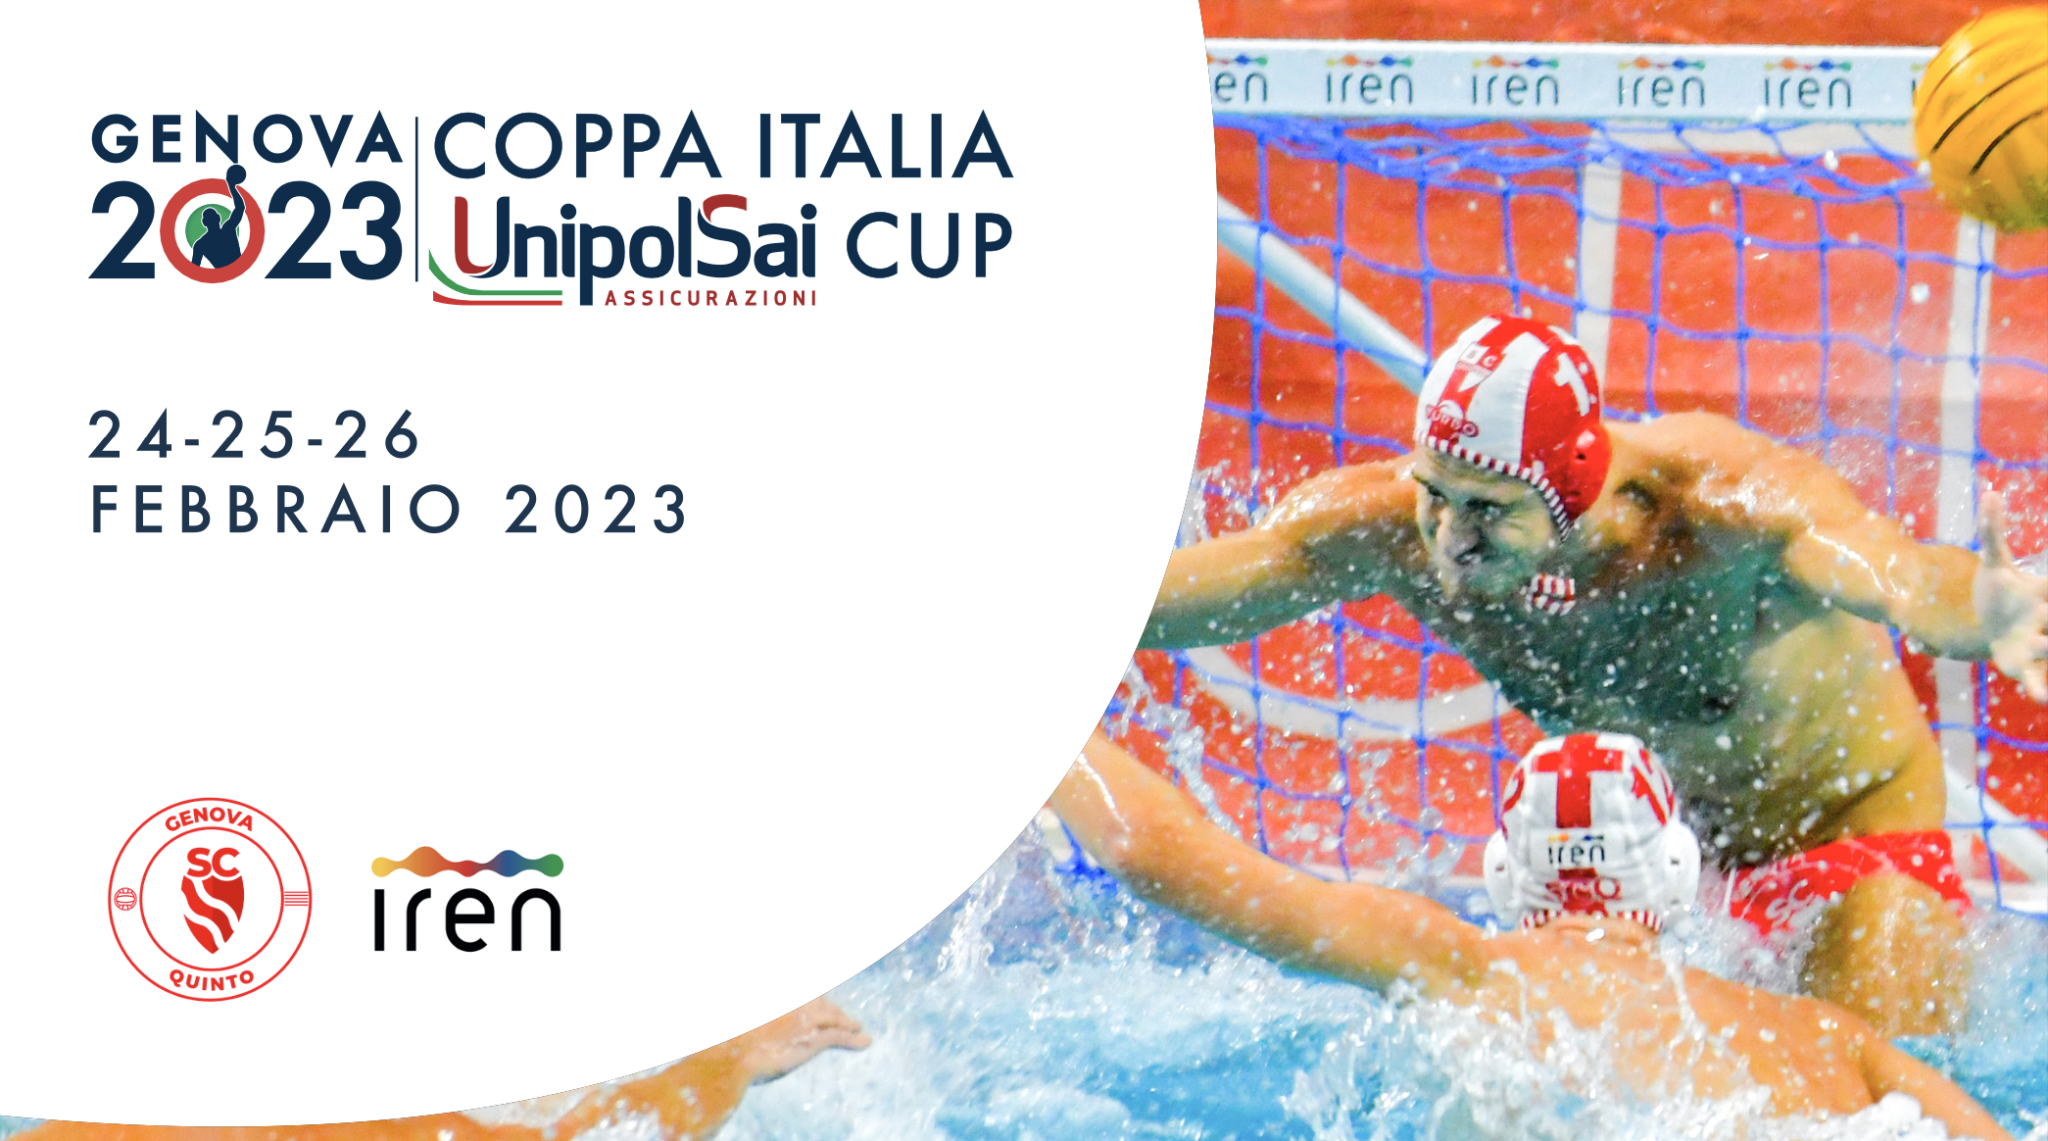 Pallanuoto, Coppa Italia 2023: la Final Eight si disputerà a Genova dal 24 al 26 febbraio